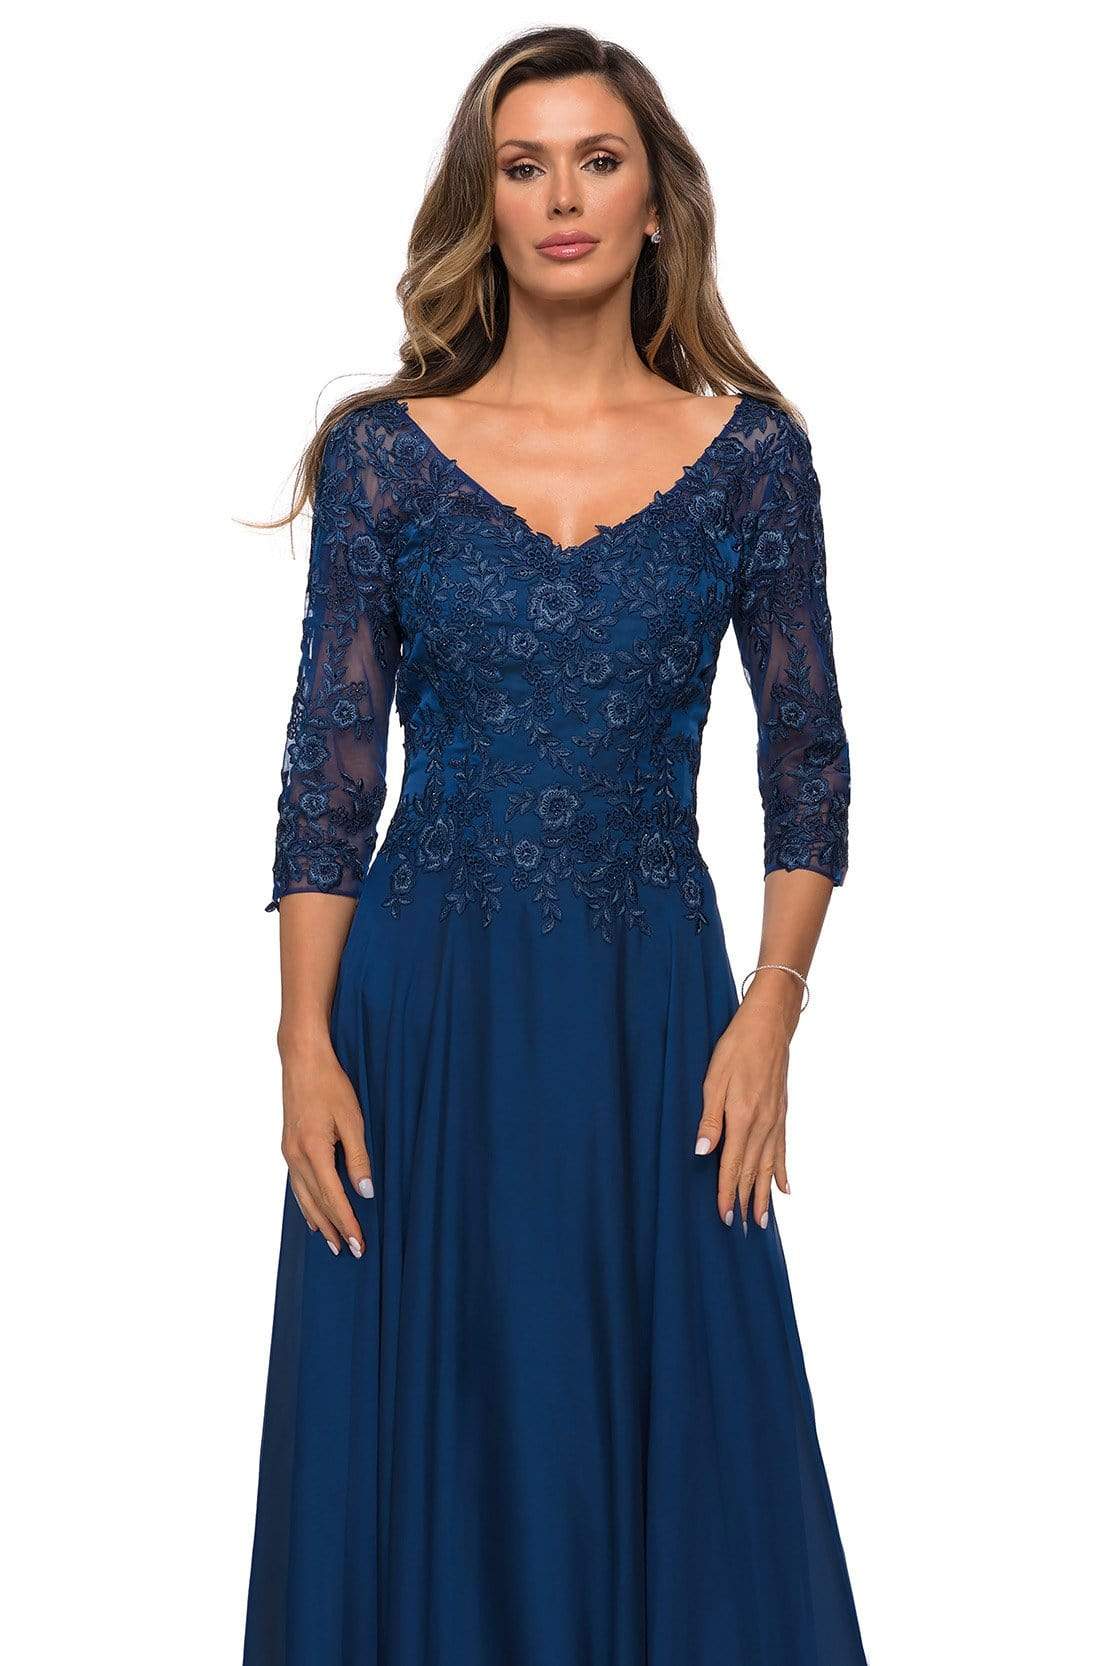 La Femme - 28106 Floral Lace Appliqued Bodice A-Line Gown – Couture Candy